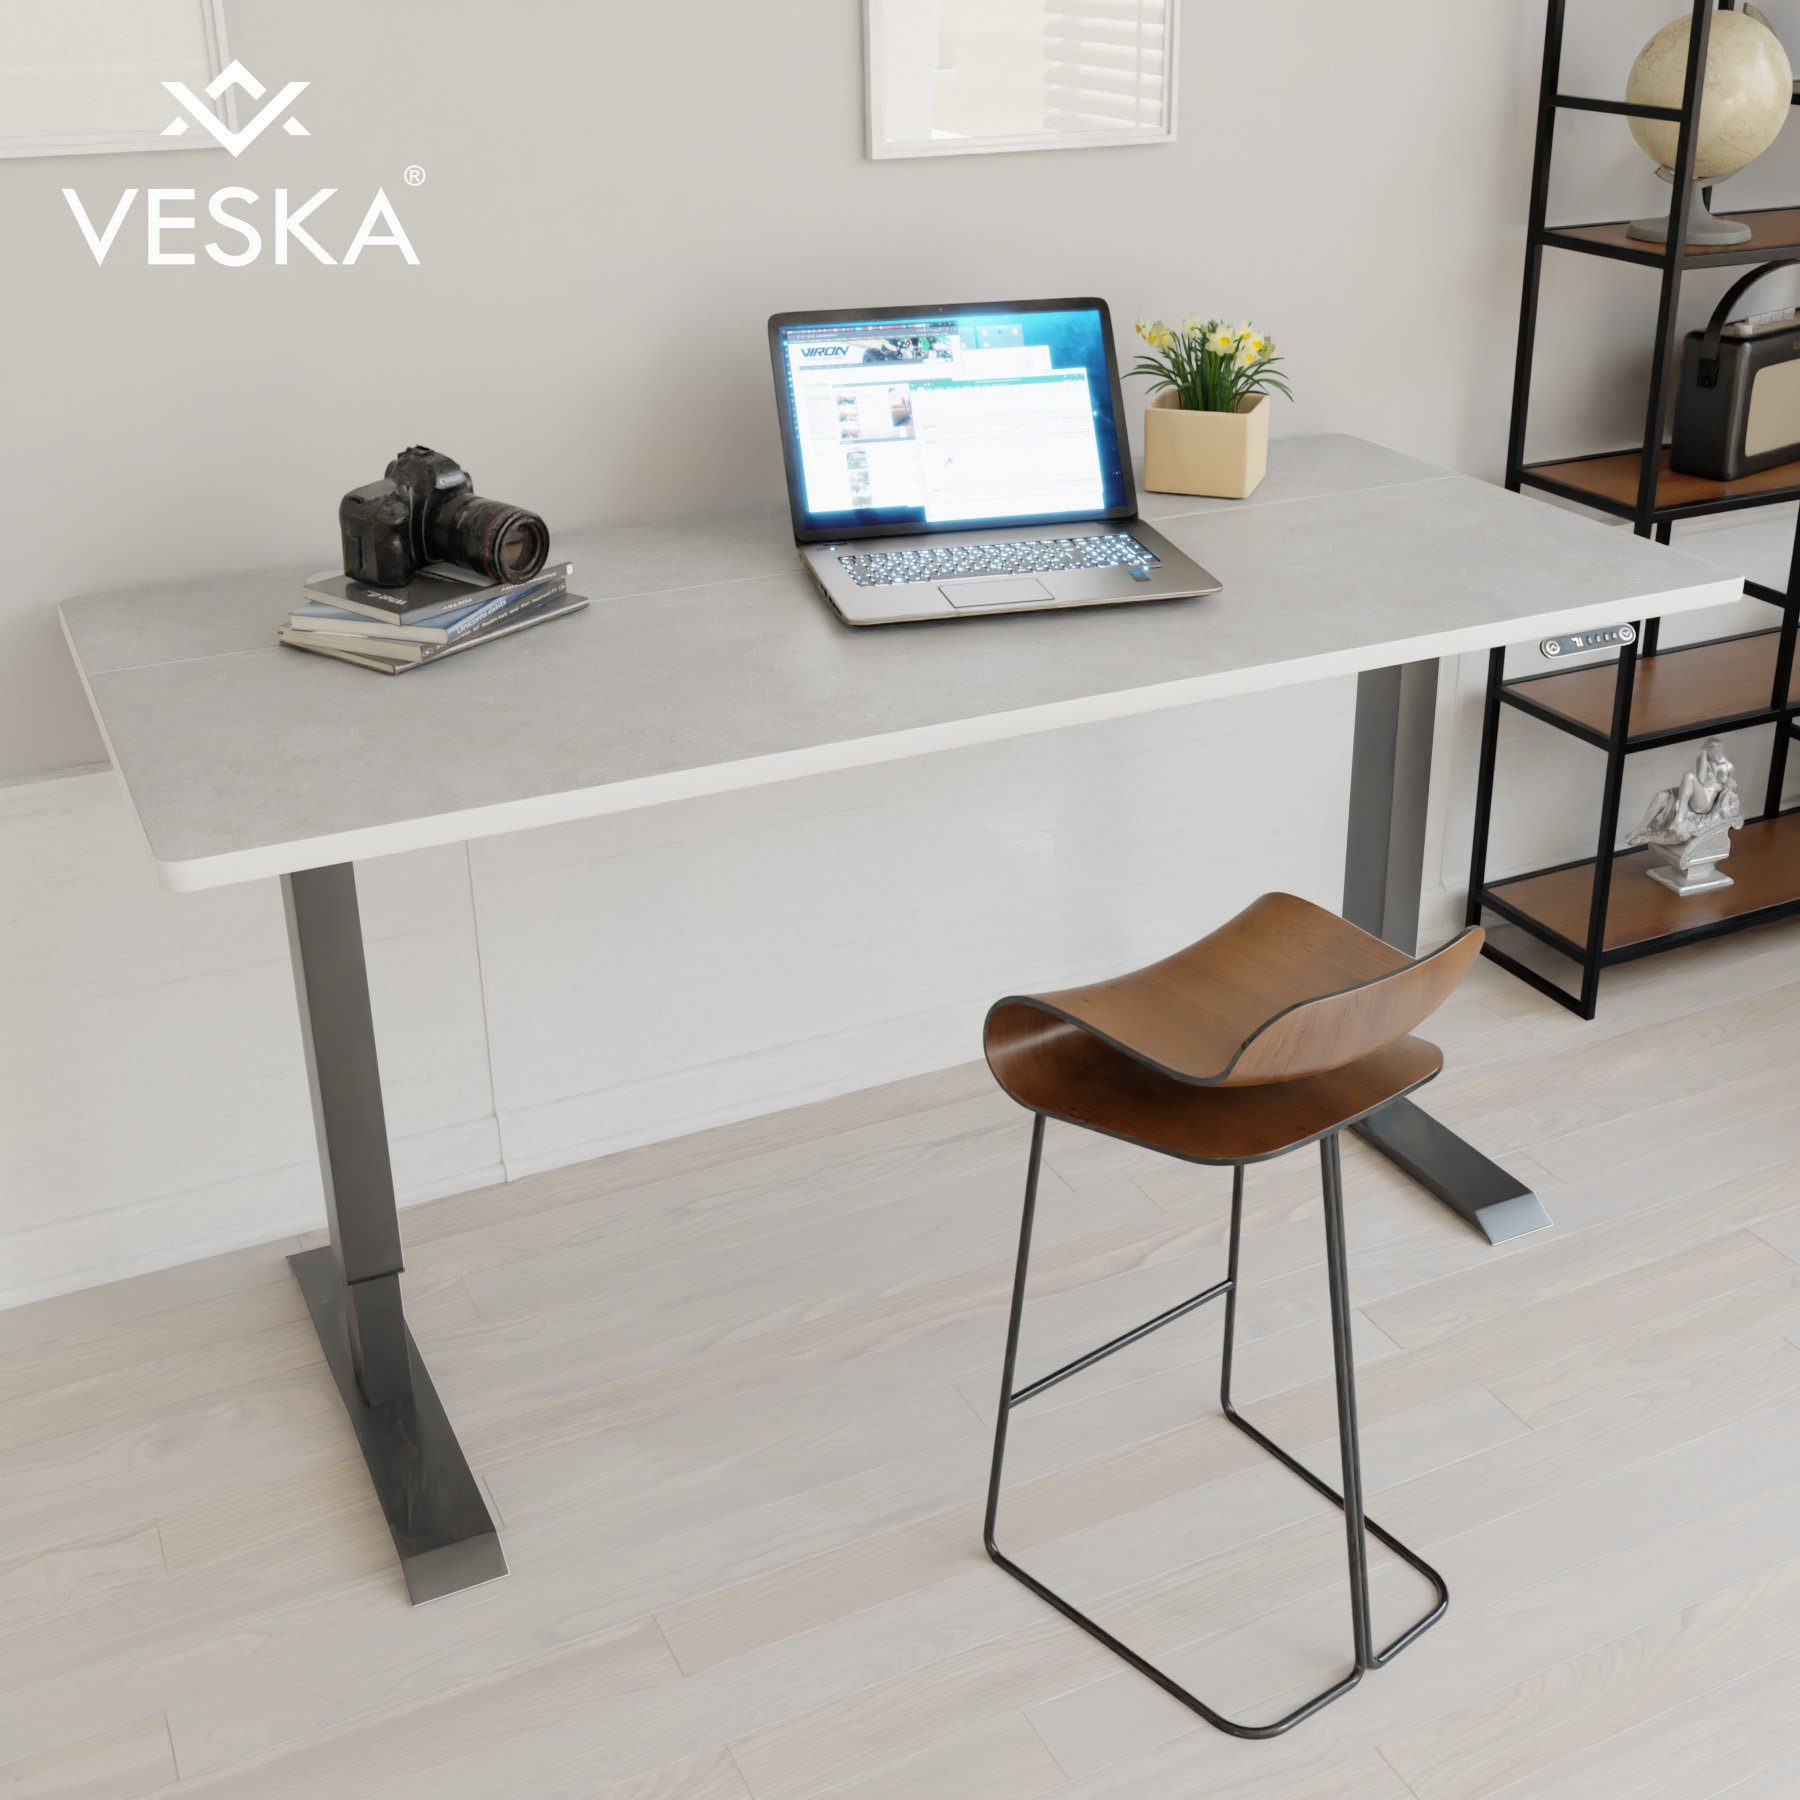 VESKA Schreibtisch Höhenverstellbar 140 x 70 cm - Bürotisch Elektrisch mit Touchscreen - Sitz- & Stehpult Home Office Anthrazit | Stein-Grau